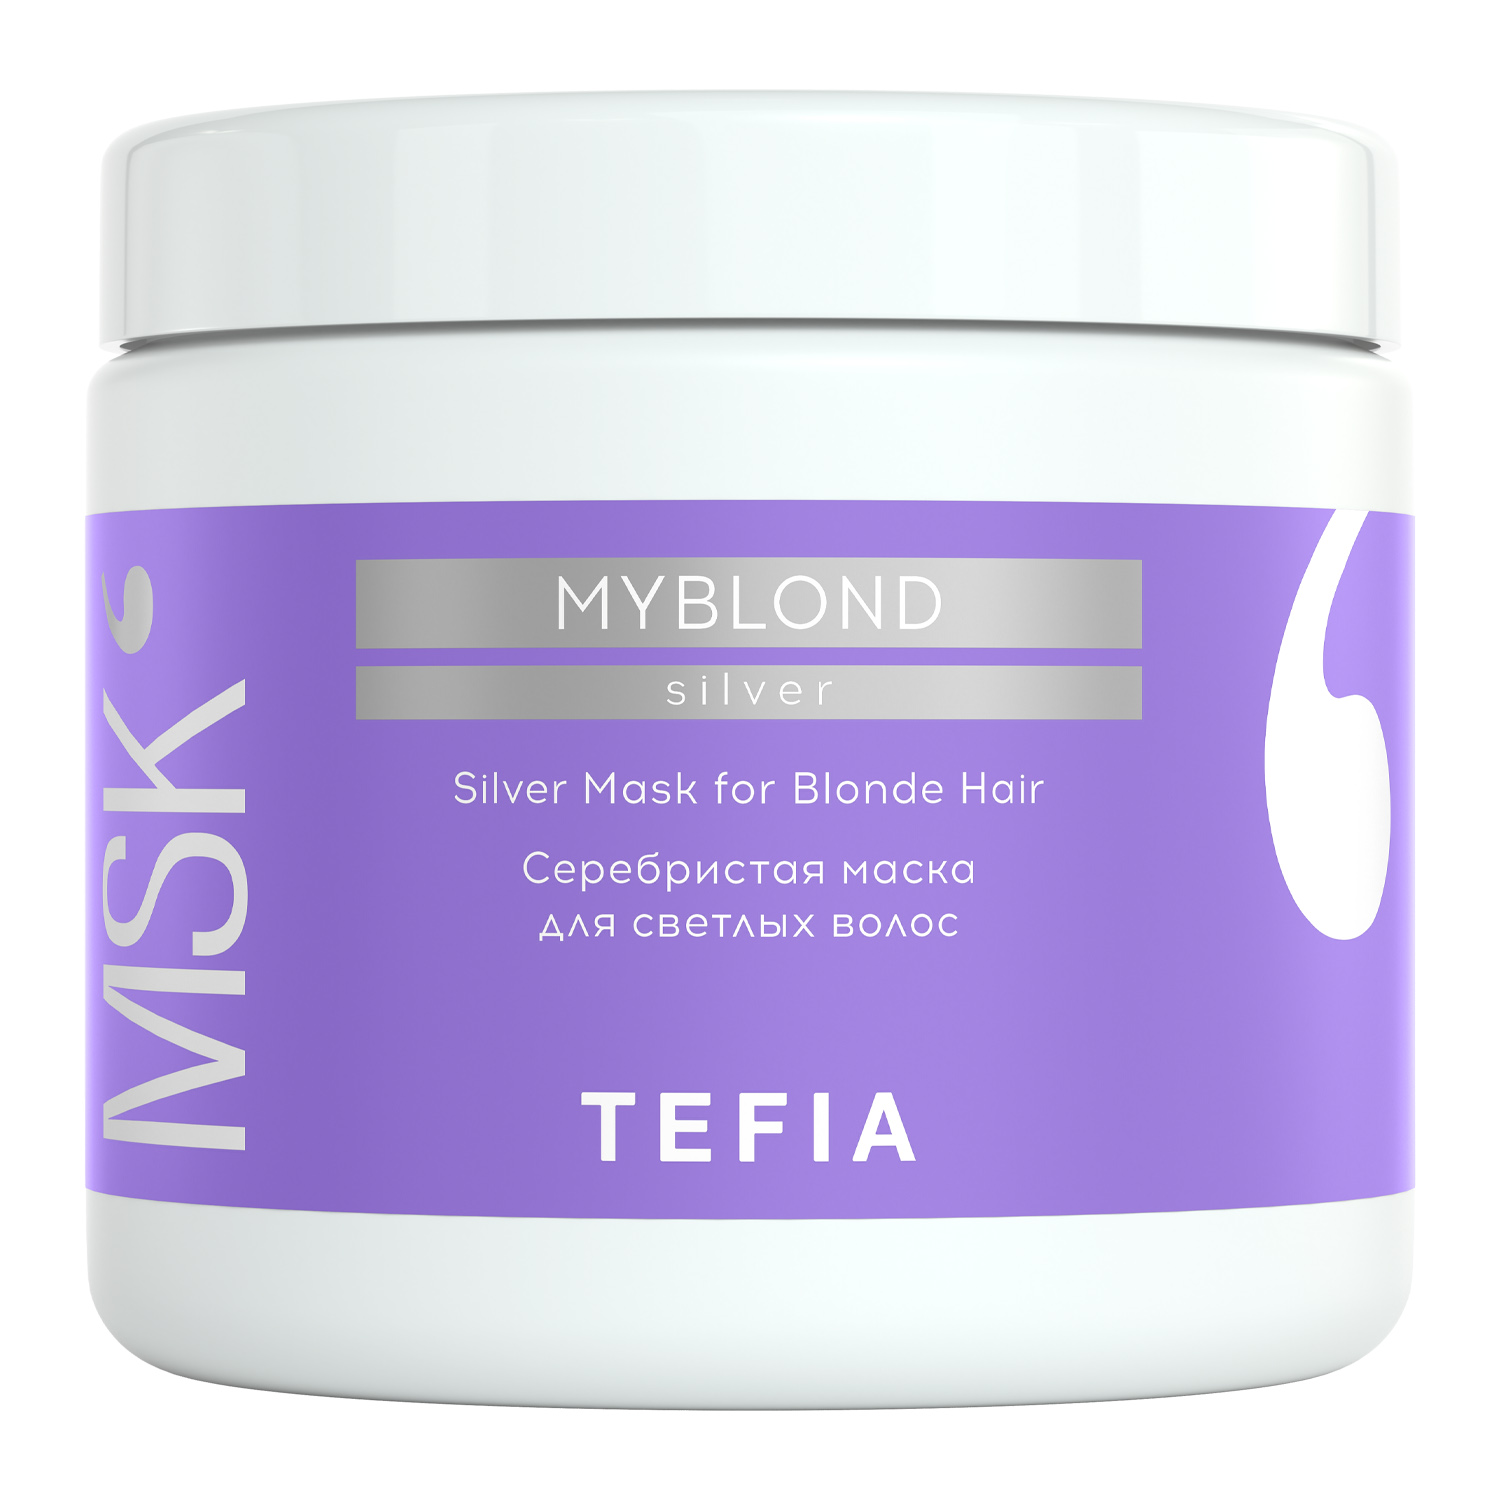 Tefia Серебристая маска для светлых волос 500 мл (Tefia, My Blond)